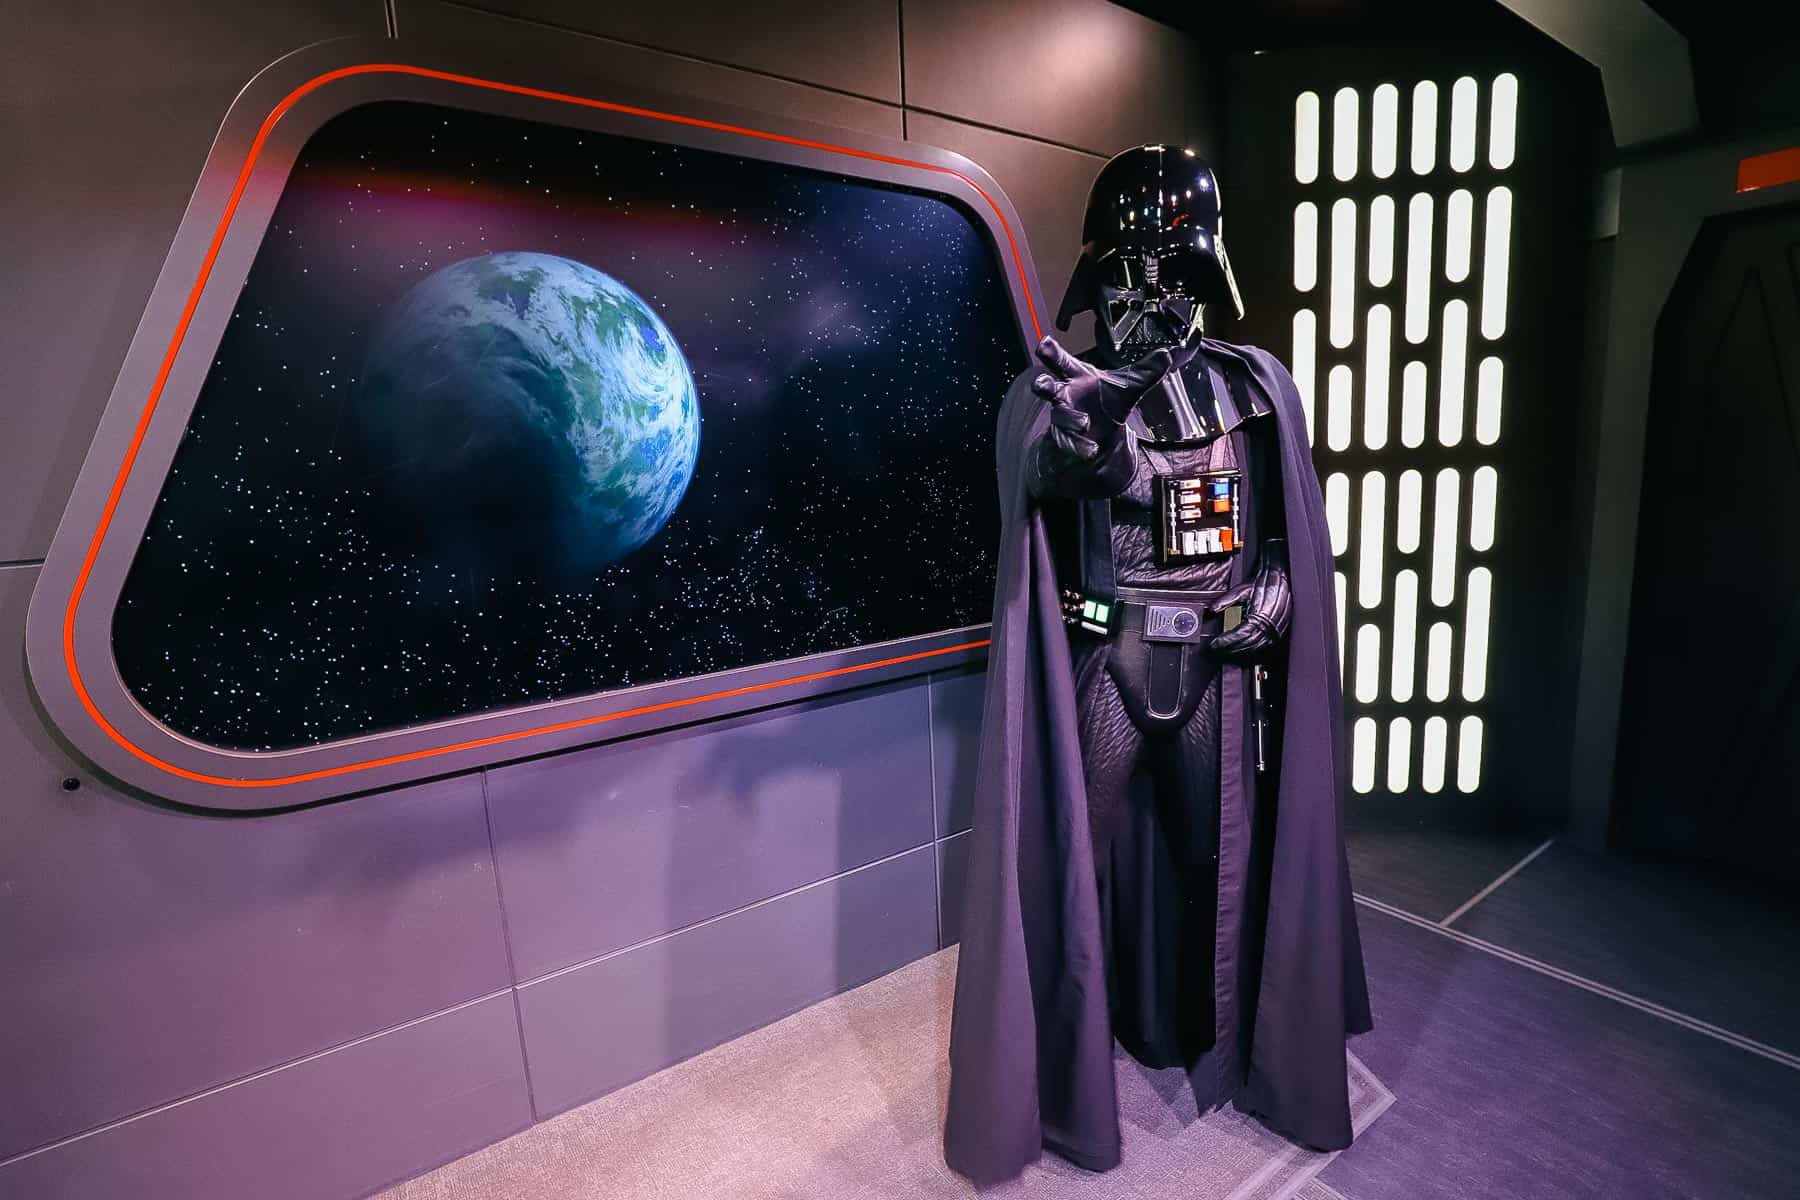 Darth Vader character at Disney World 